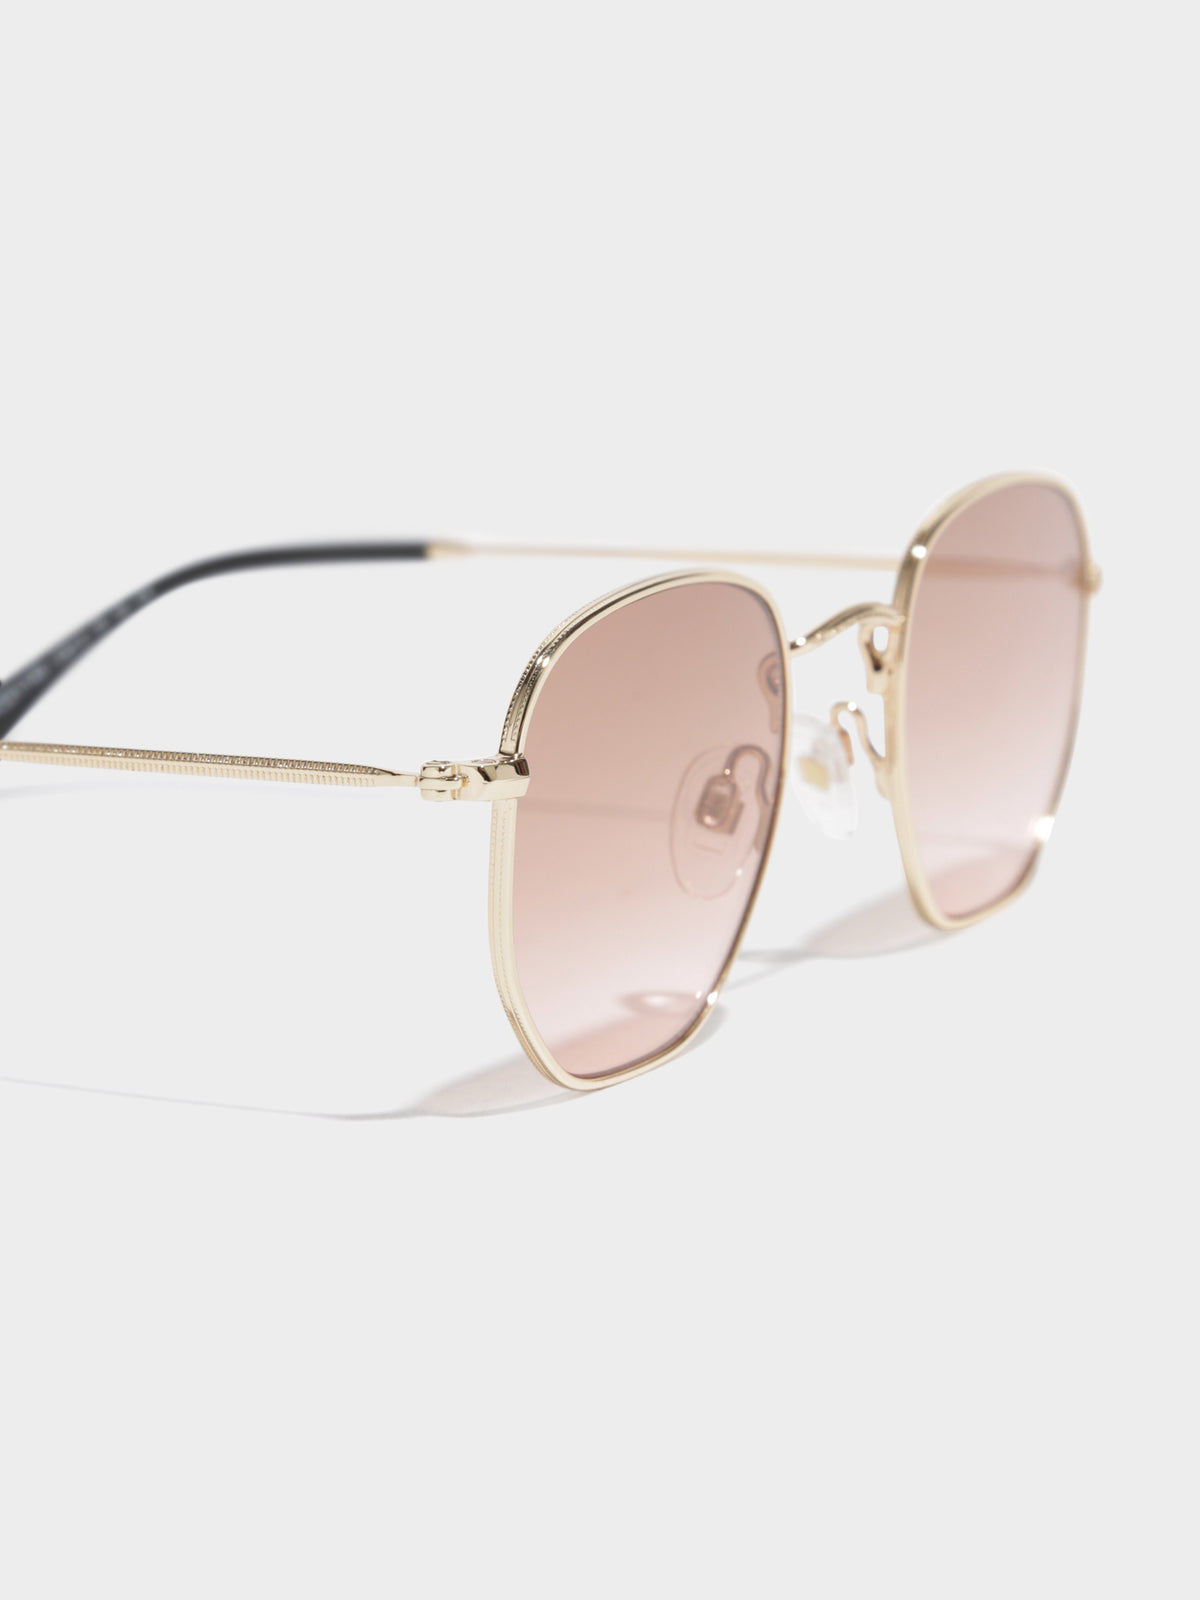 CL6551 Carangie Sunglasses in Gold